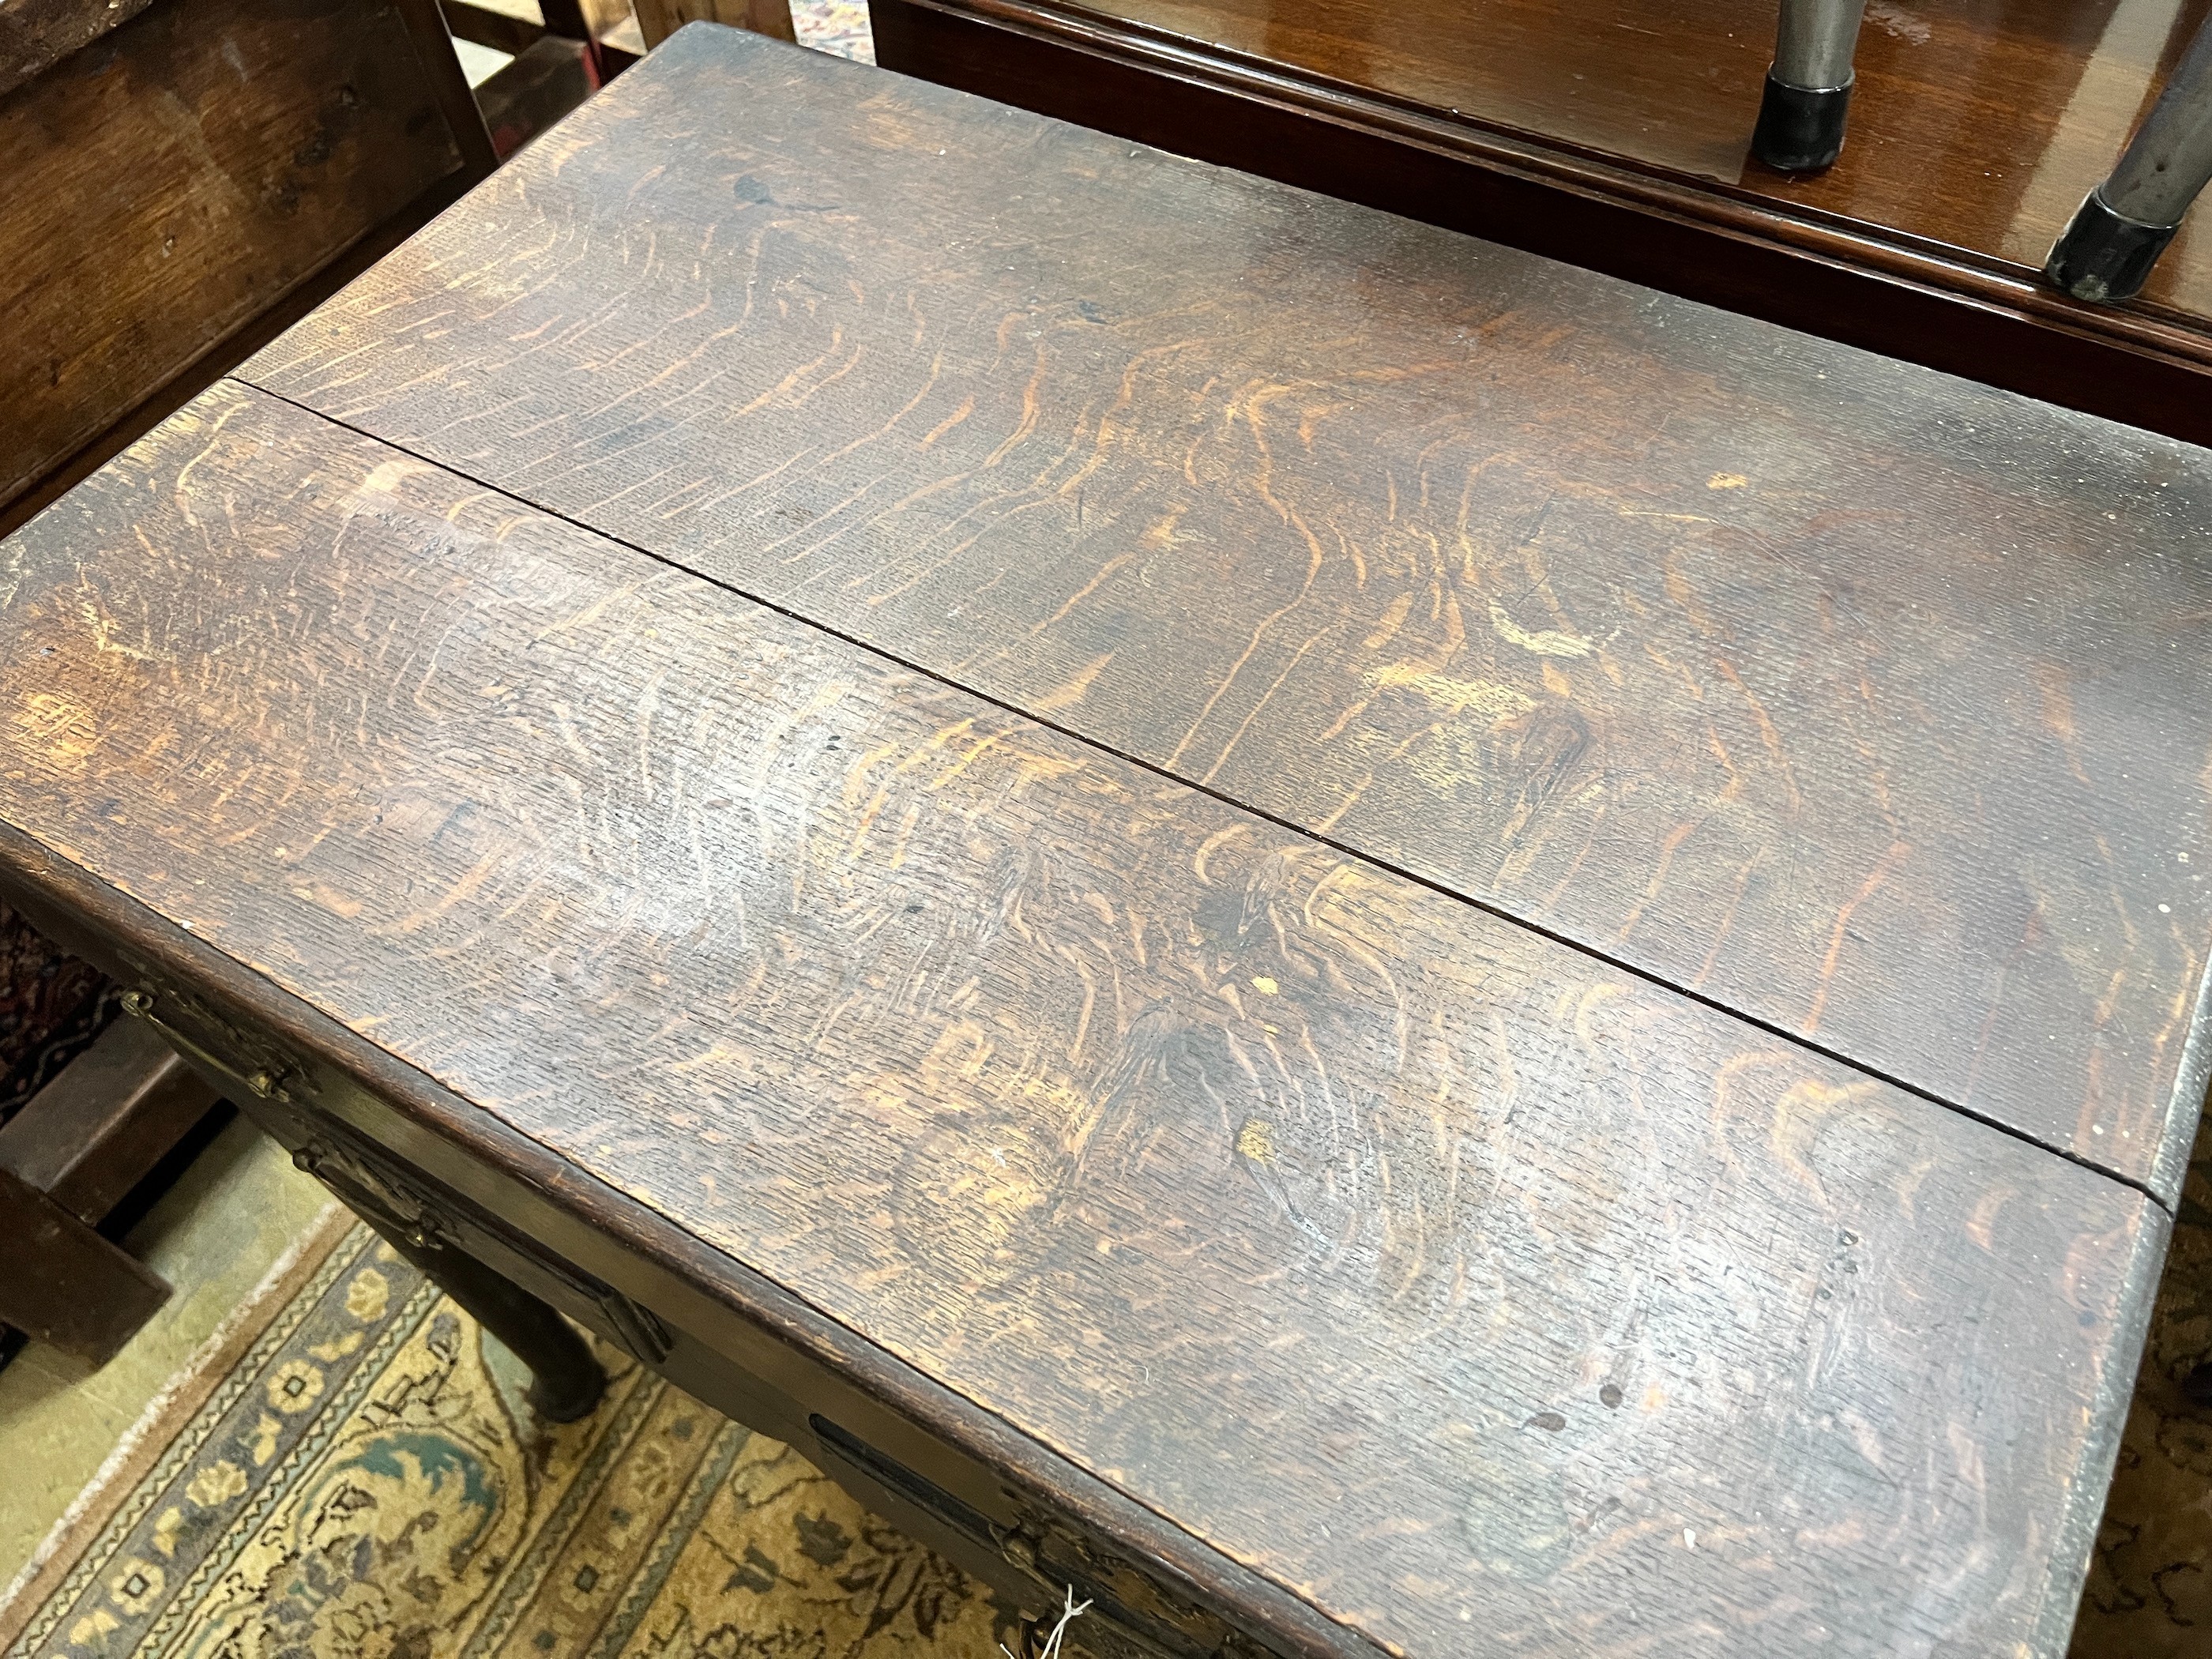 A George III oak side table, width 72cm, depth 49cm, height 71cm